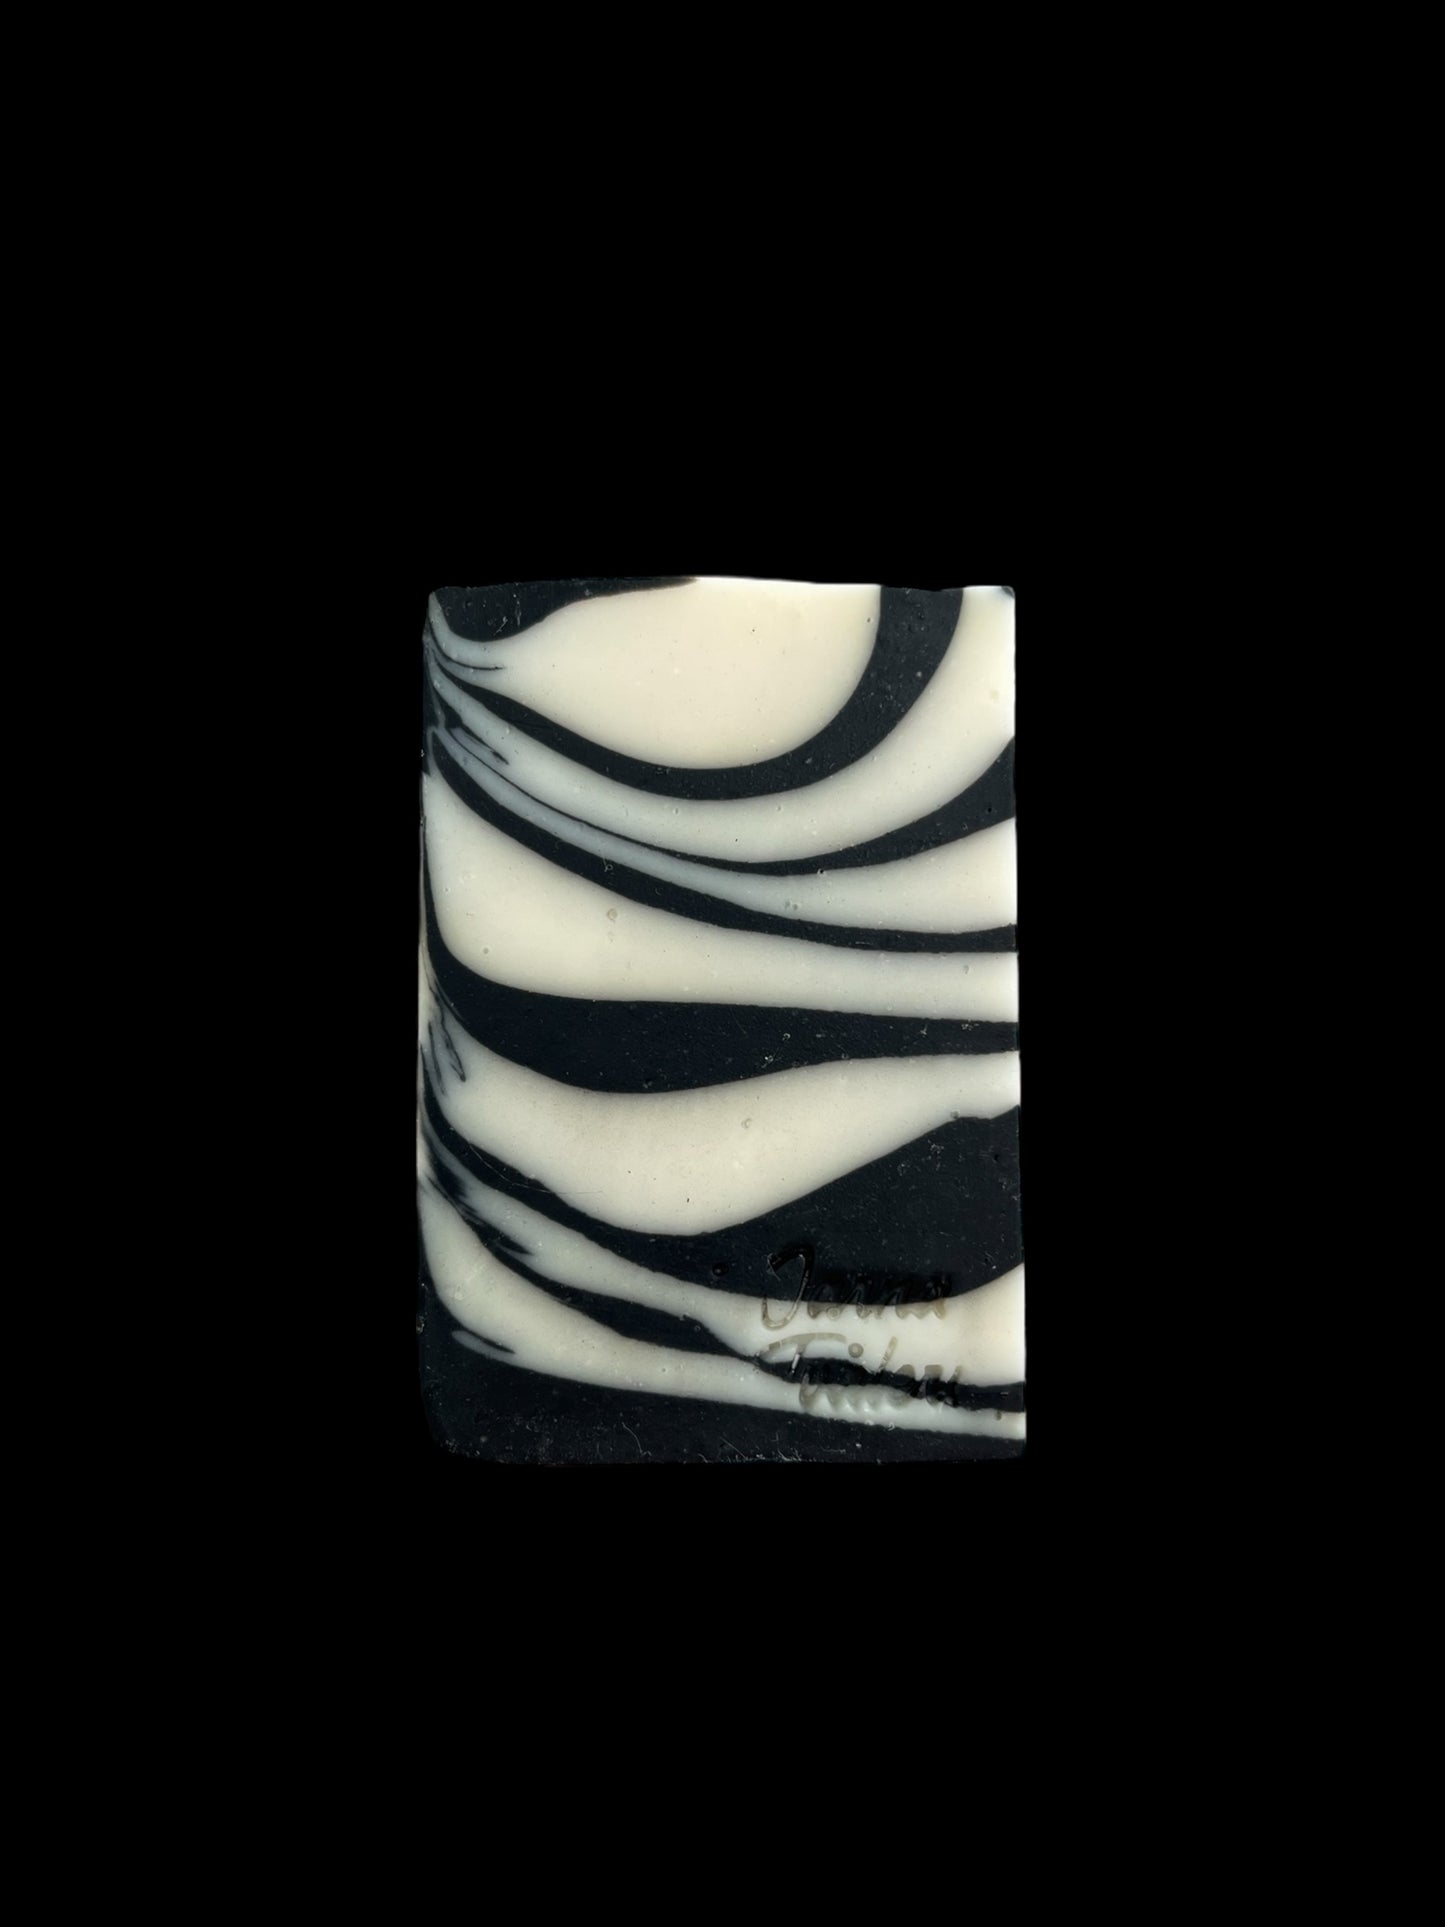 Zebra licorice